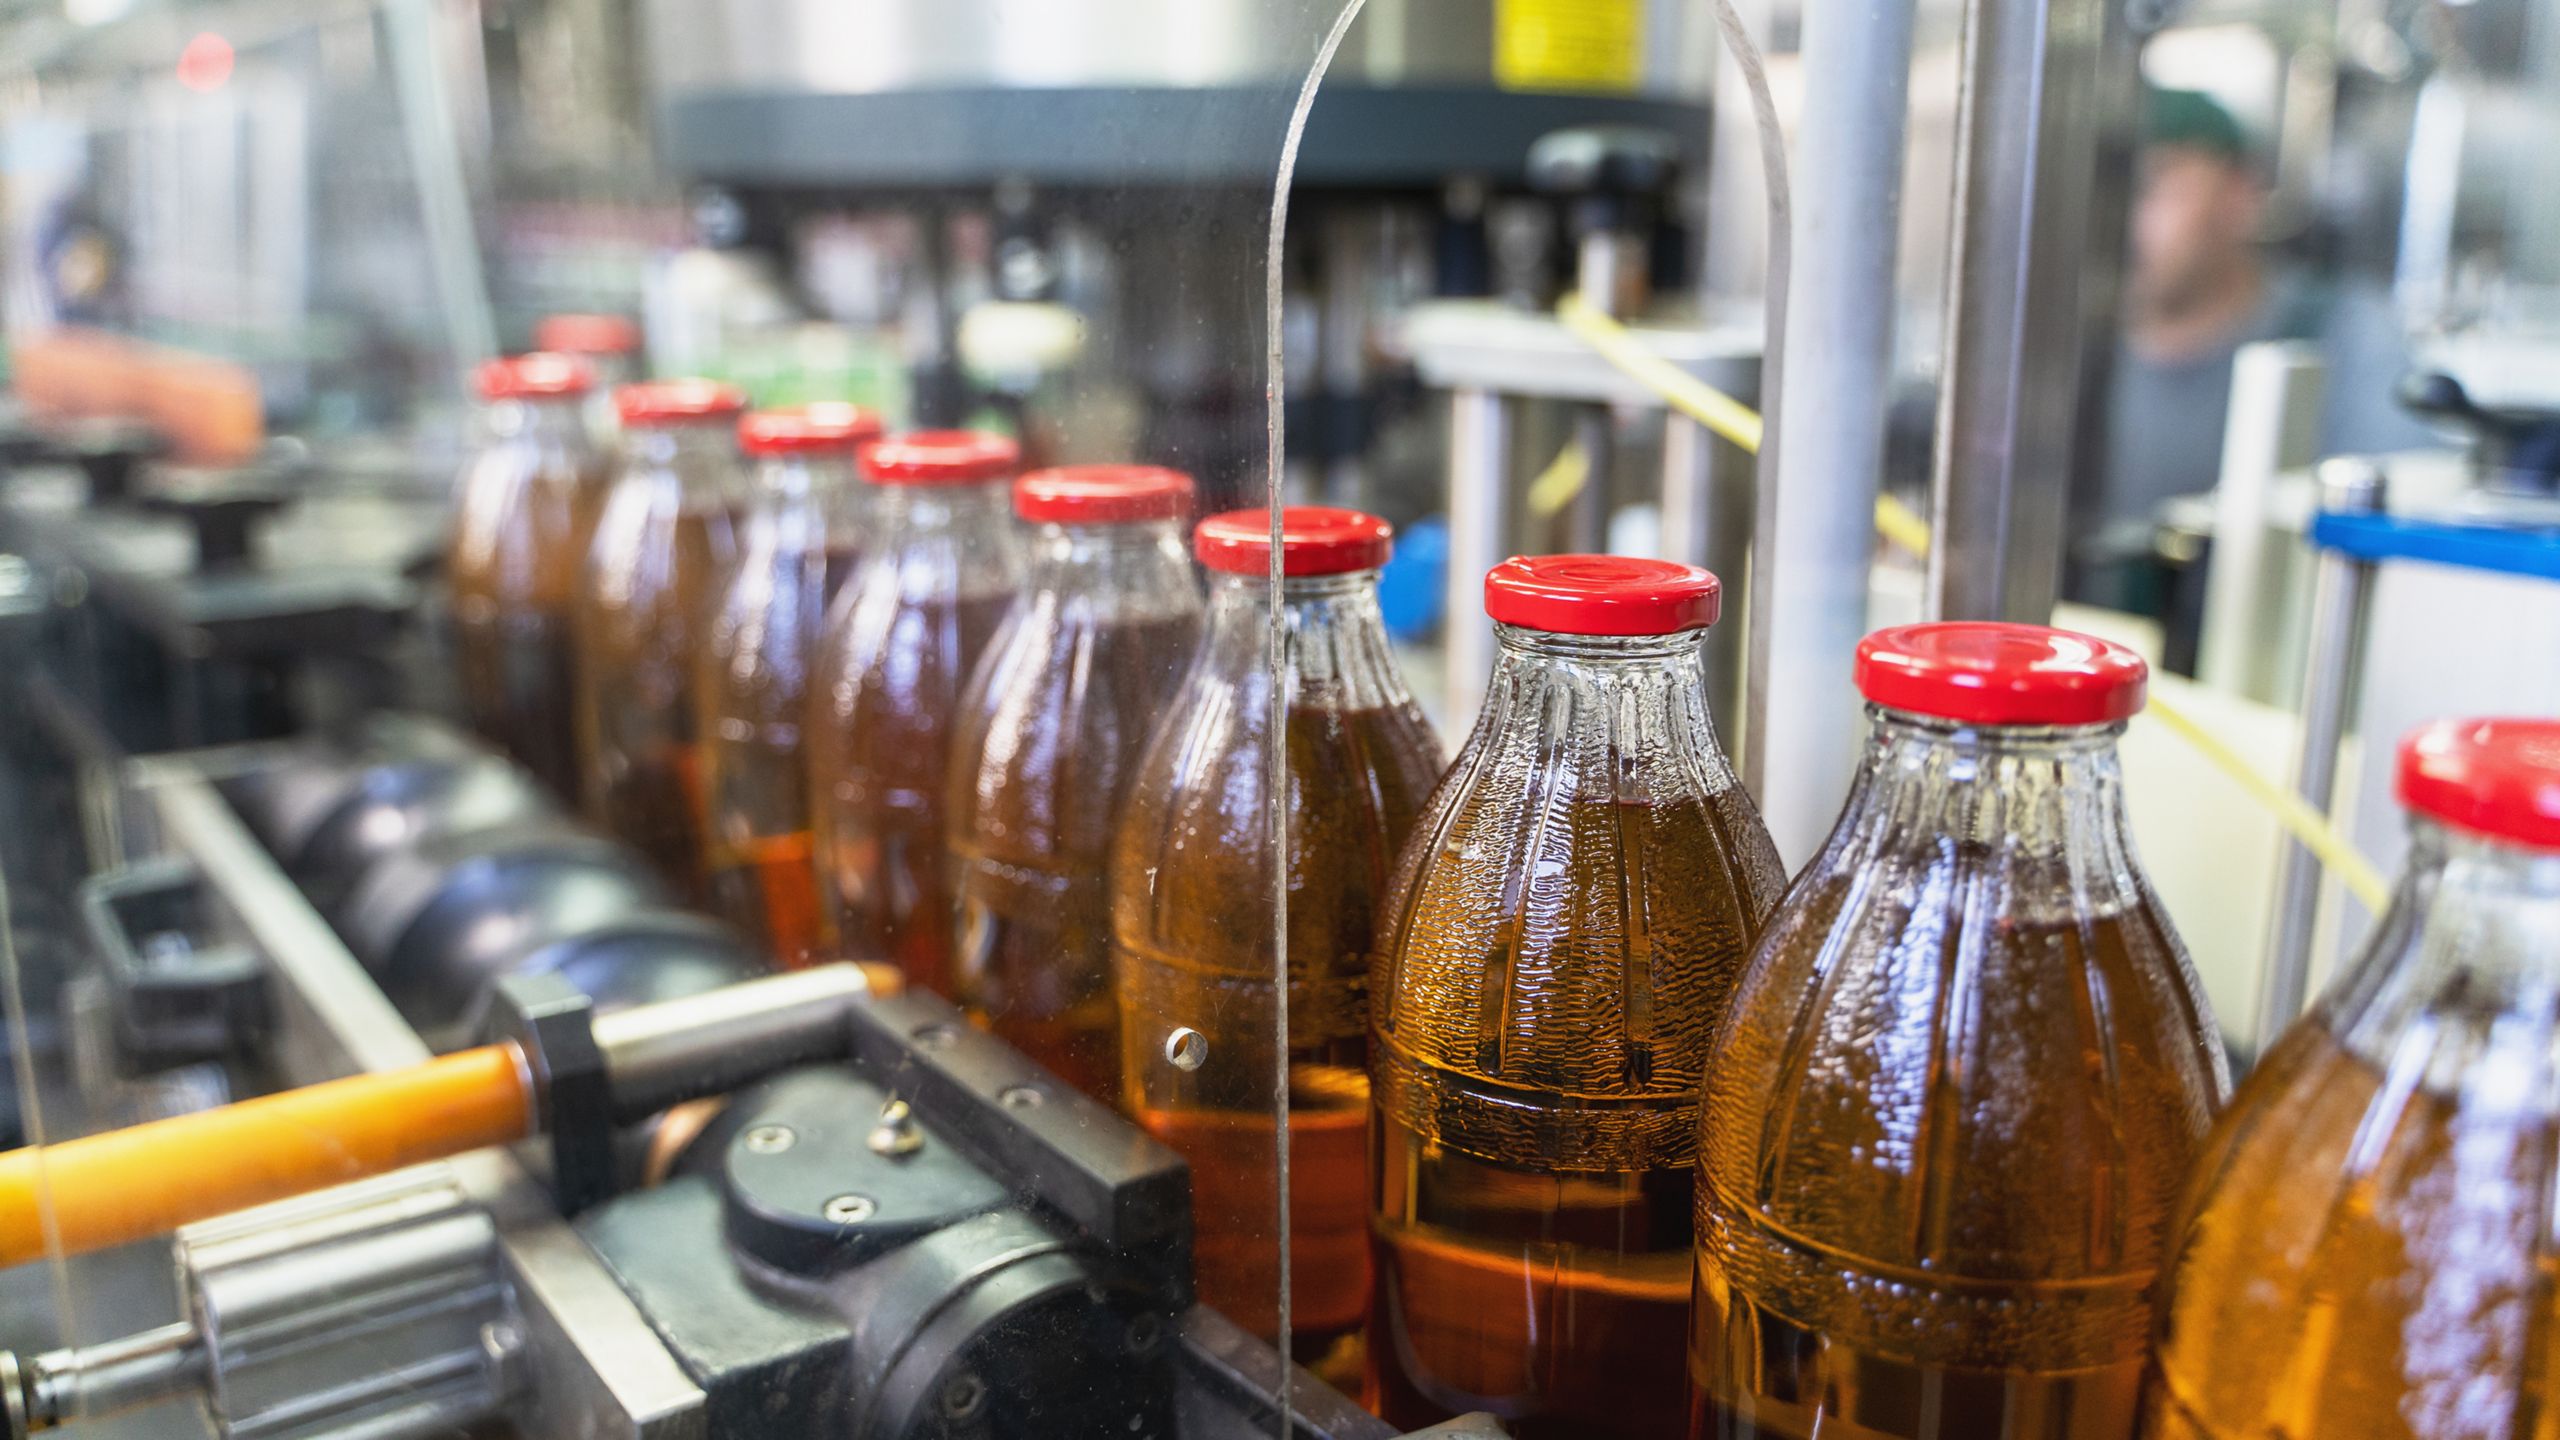 In Flaschen abgefüllte Getränke werden in einer Getränkefabrik über ein Förderband bewegt